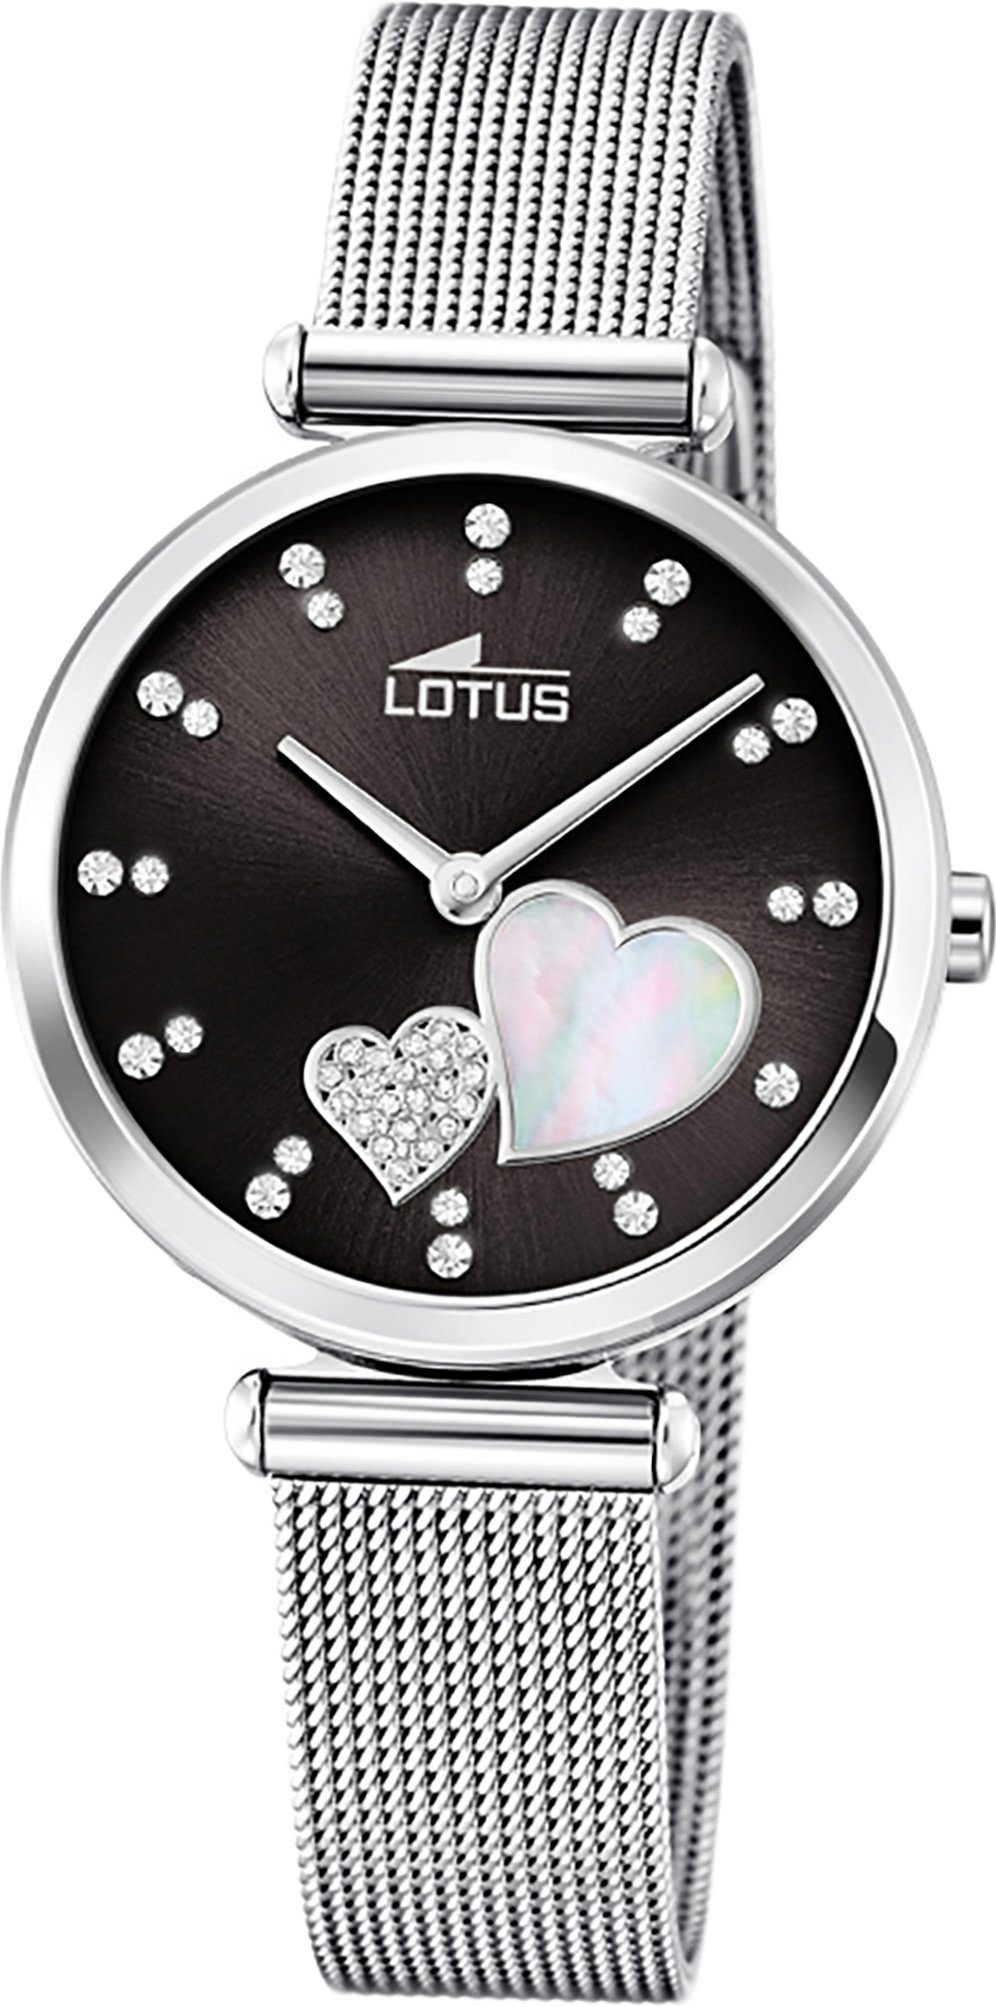 Lotus Quarzuhr LOTUS Edelstahl Damen Uhr 18615/4, Damenuhr mit Edelstahlarmband, rundes Gehäuse, klein (ca. 29mm), Fashi